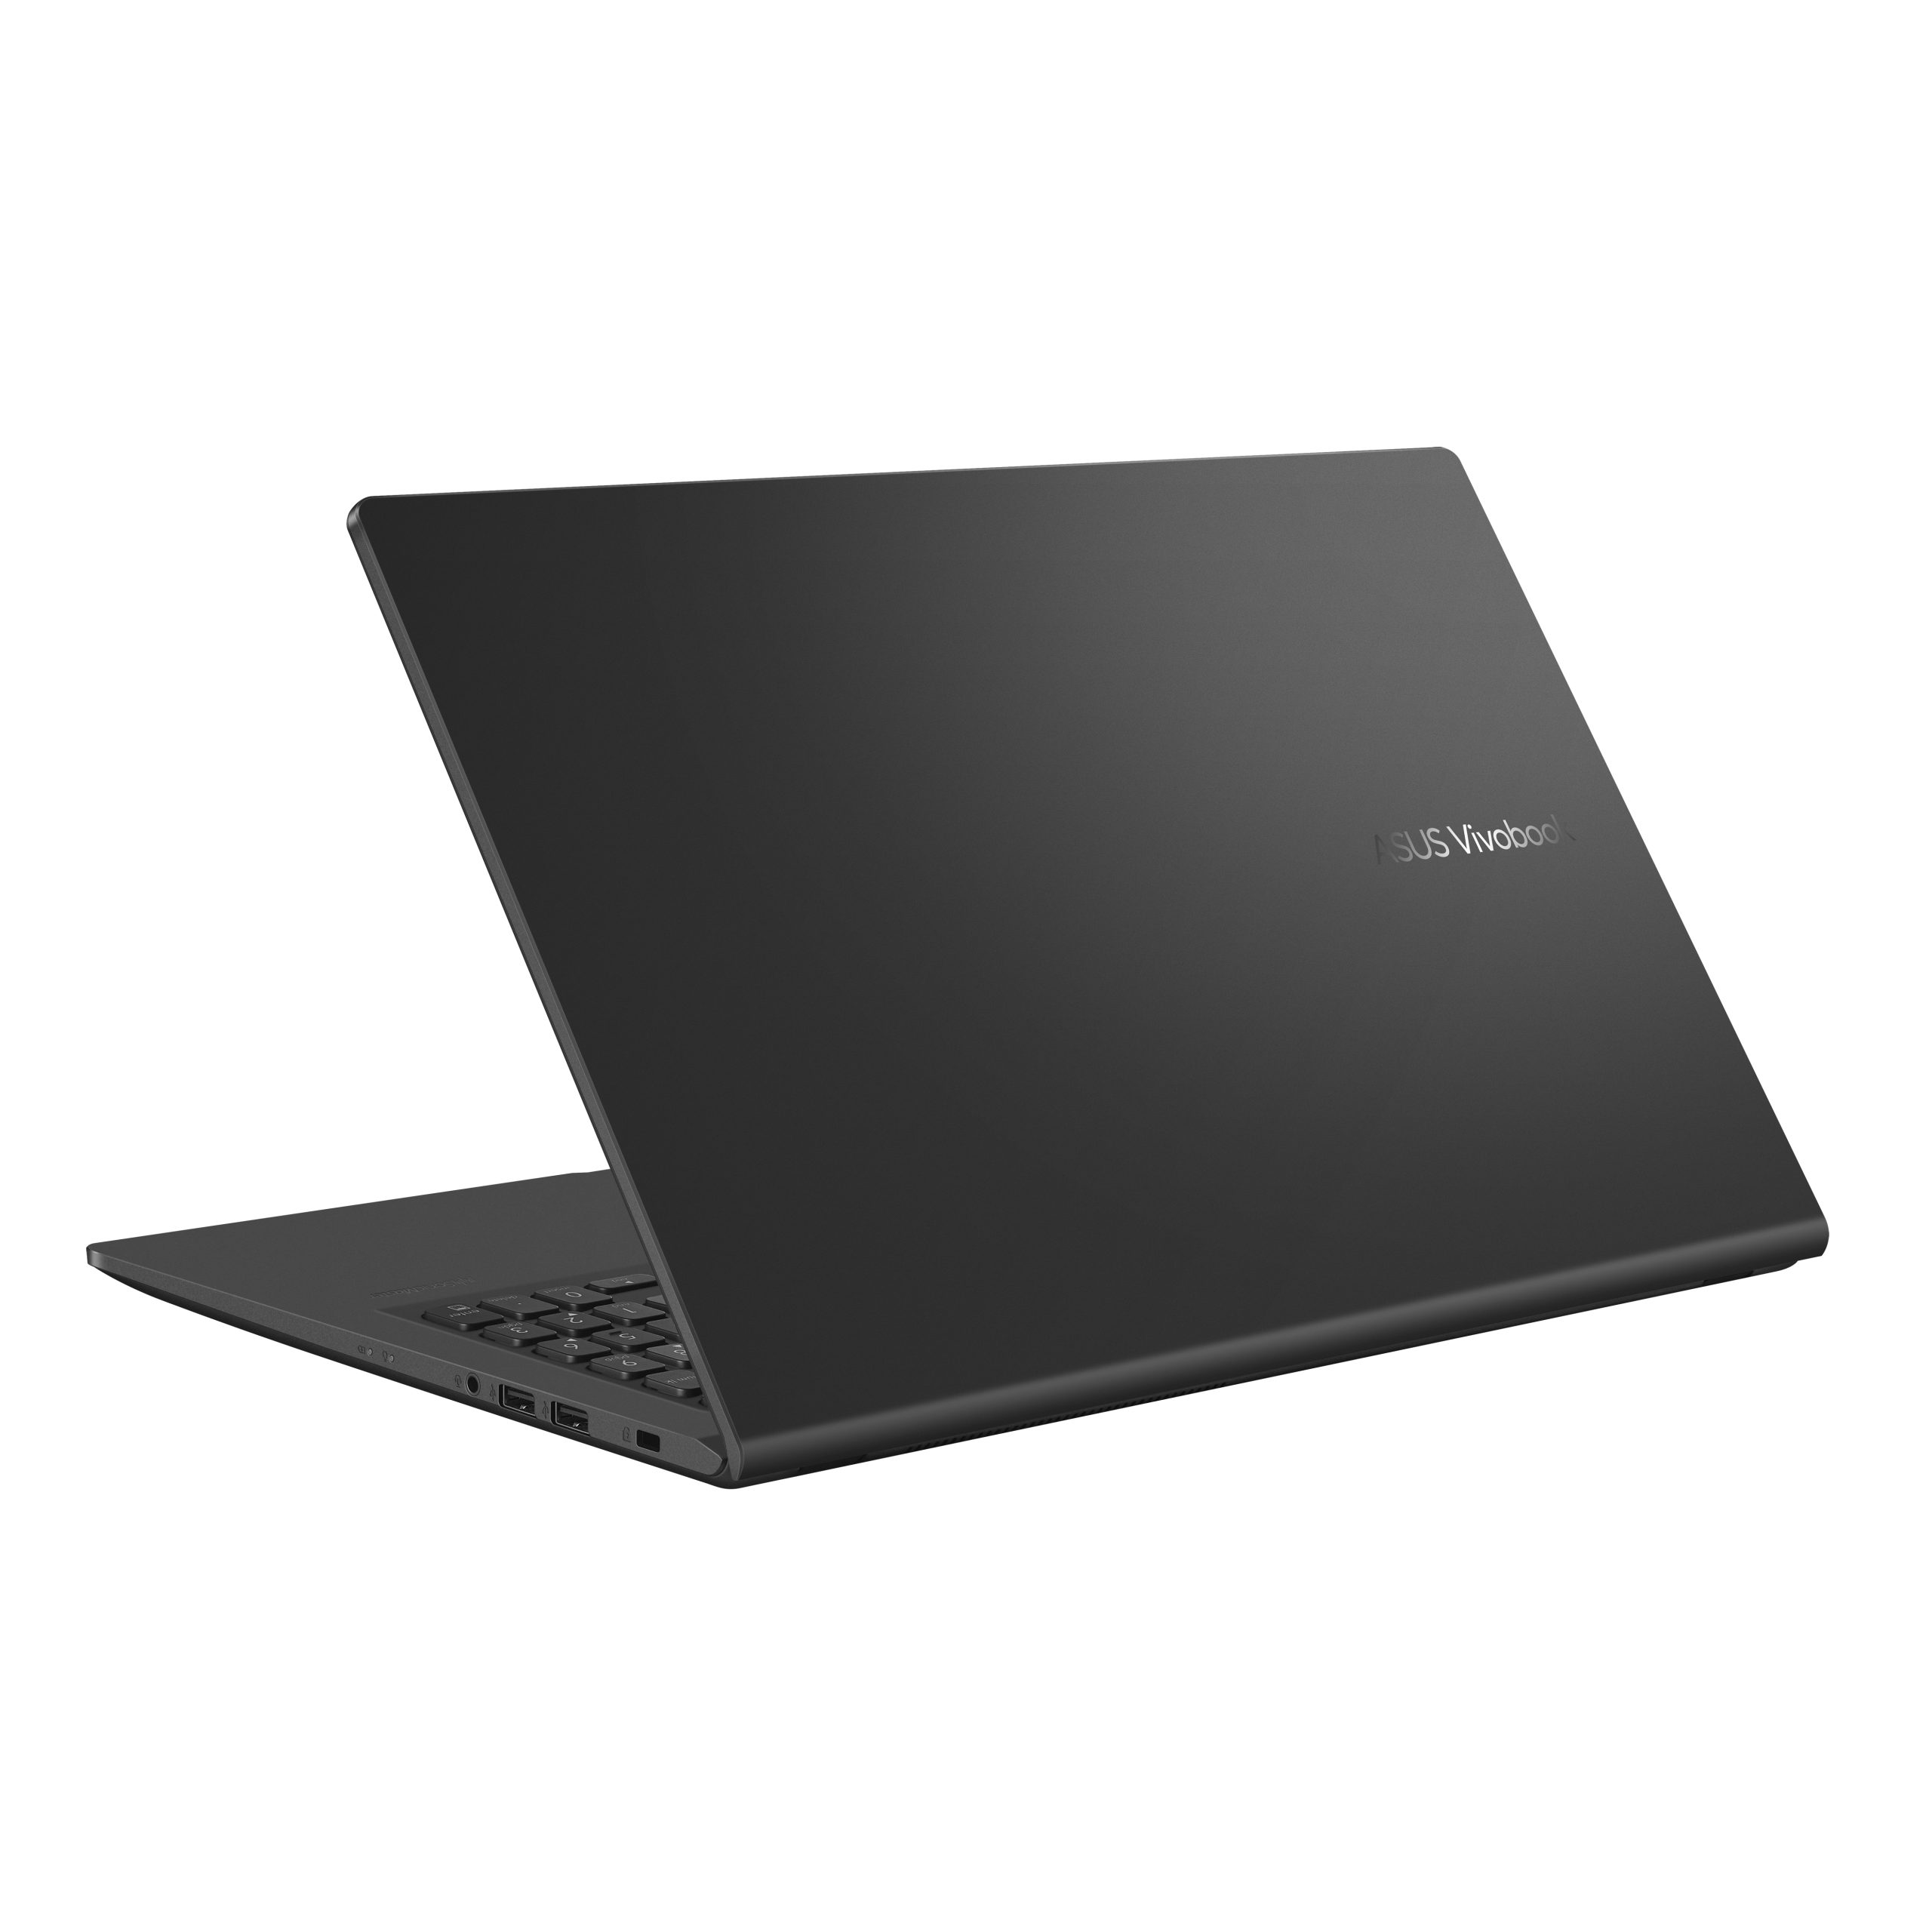 Asus VivoBook 17 17.3 Full HD Laptop, Intel Core i3 i3-1115G4